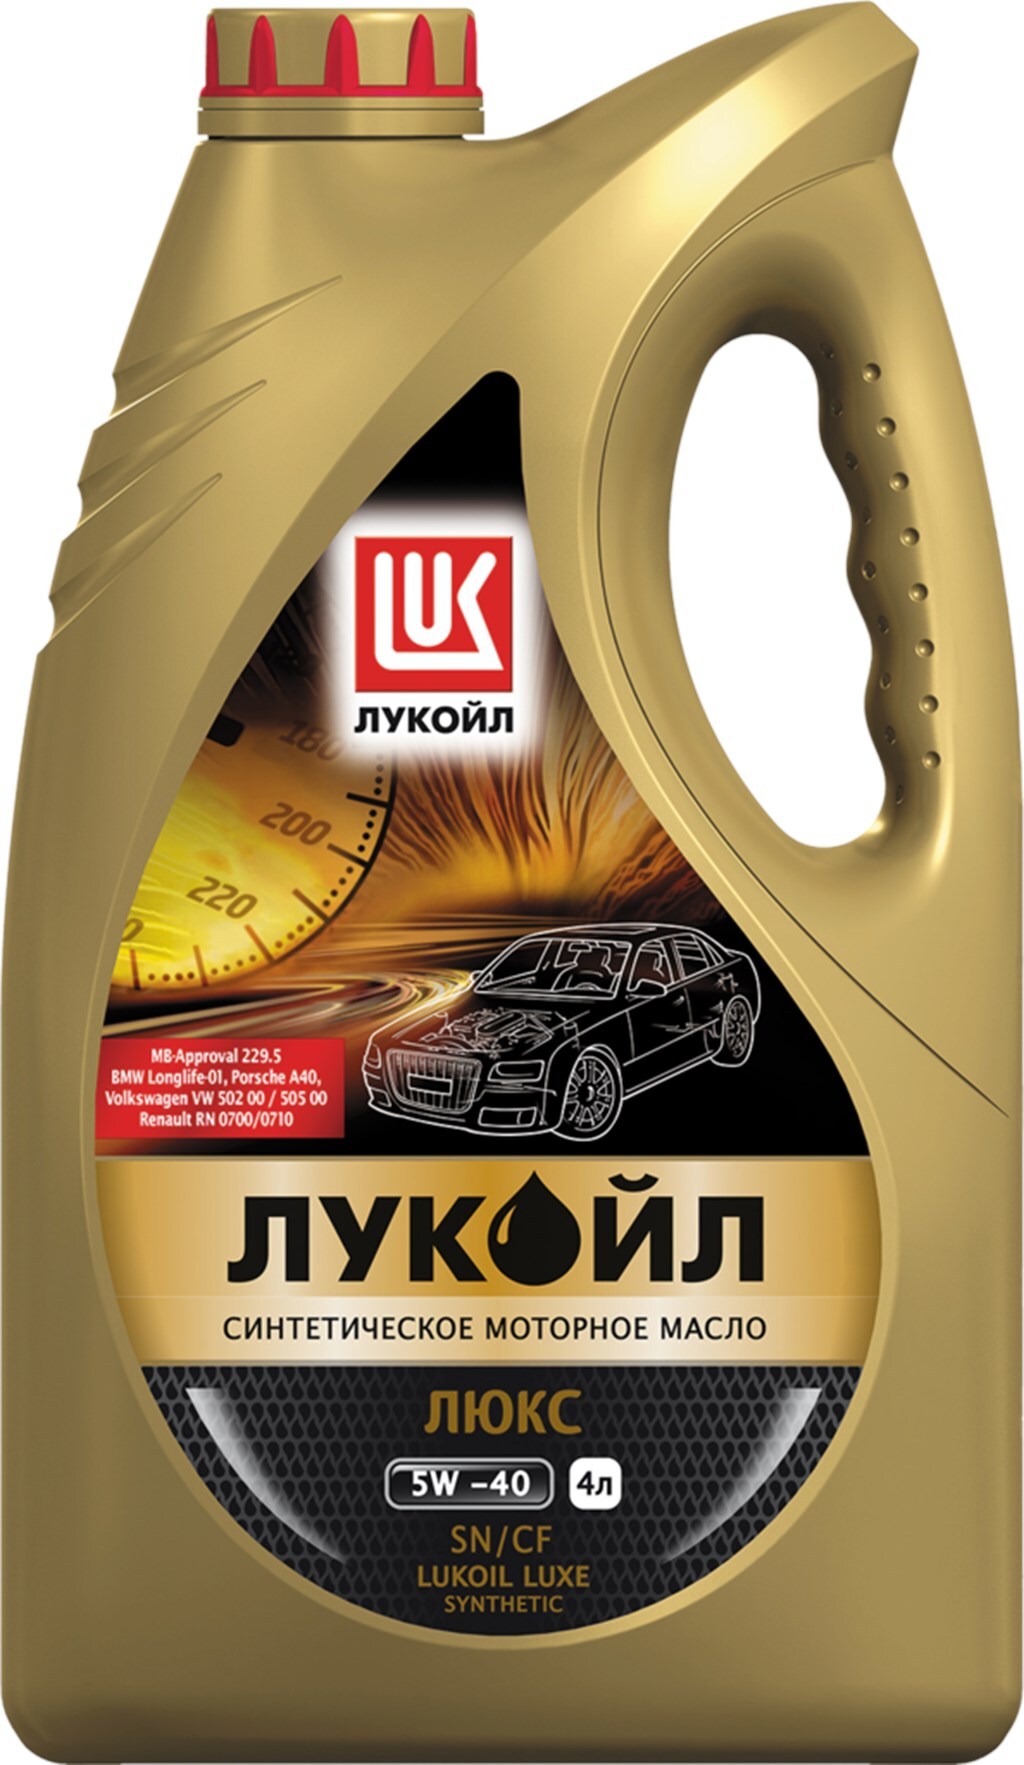 Лукойл 5w40 4л купить. Lukoil Luxe 5w-40. Лукойл-Люкс 5w40 4л синтетика. Лукойл Люкс 5w40 синтетика. Масло моторное Лукойл Люкс 5w40 синтетика.